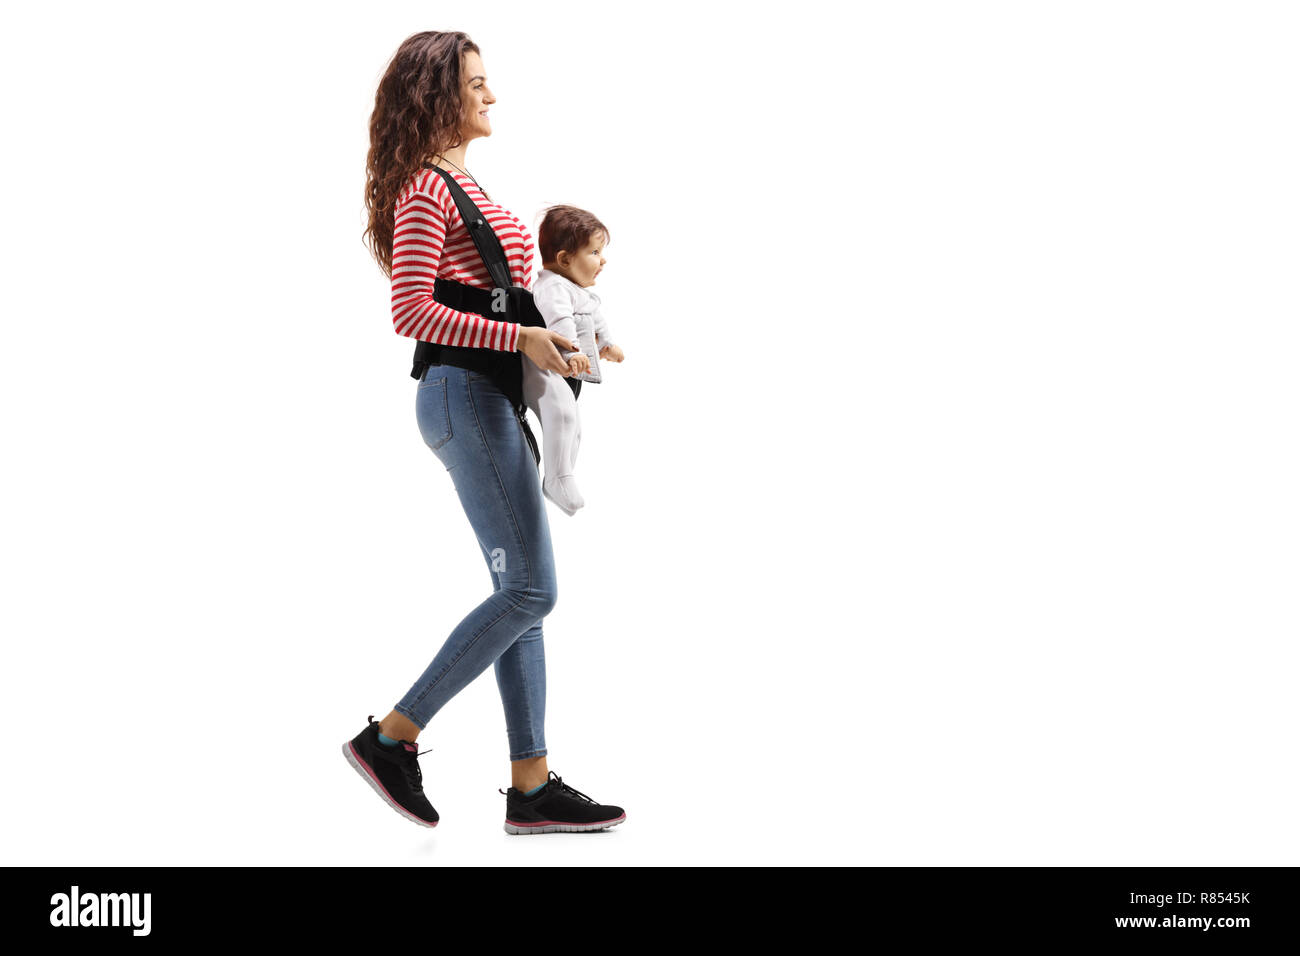 Disparo de longitud completa de una madre joven con un bebé en un portador caminar aislado sobre fondo blanco. Foto de stock